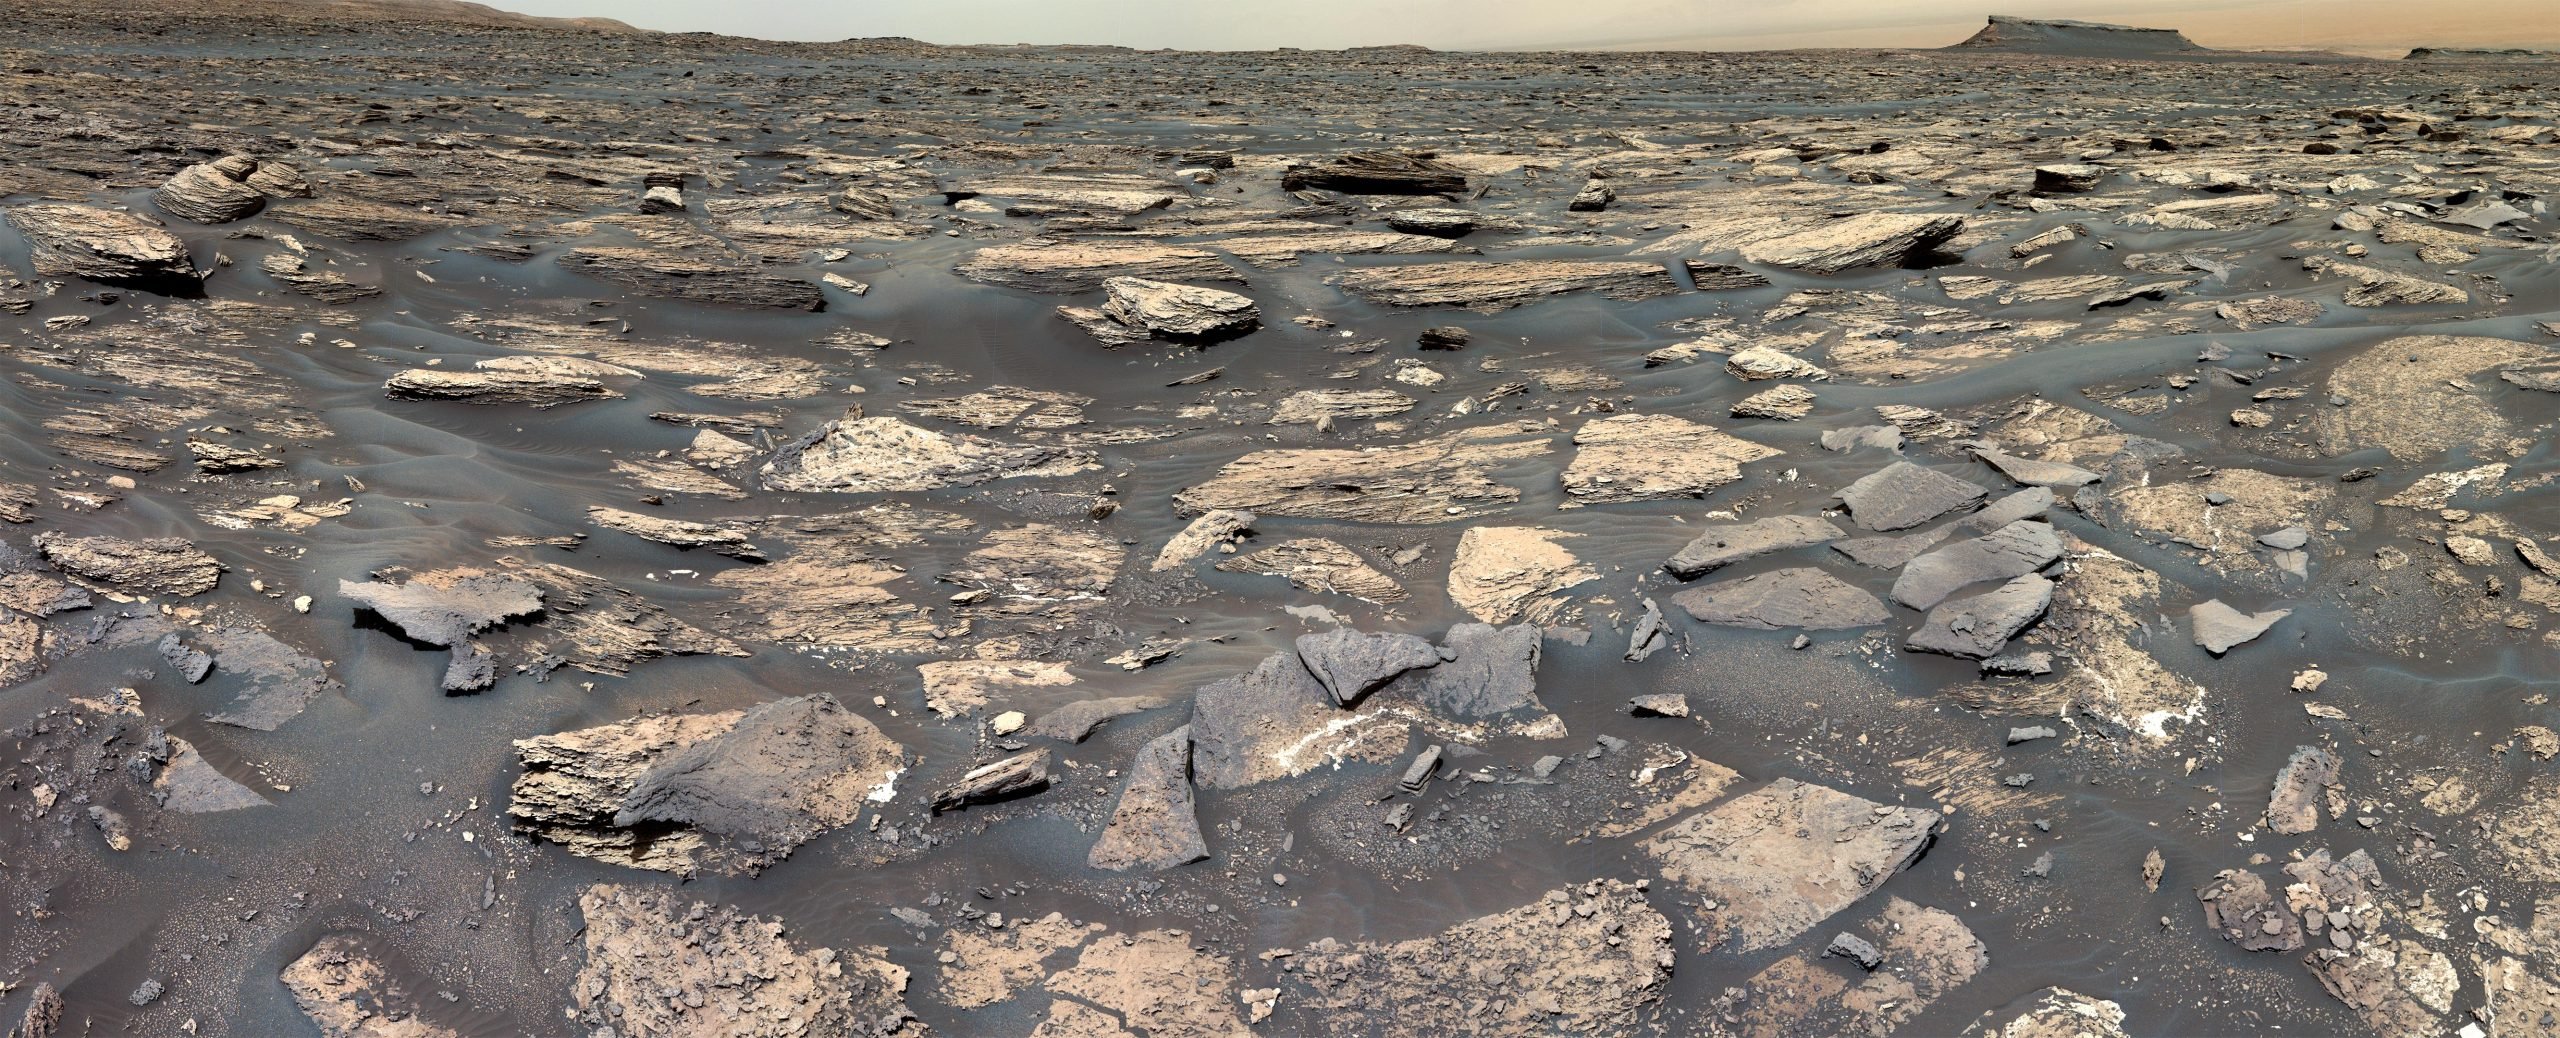 Łazik Curiosity NASA wykrywa oznaki środowiska podobnego do Ziemi na starożytnym Marsie